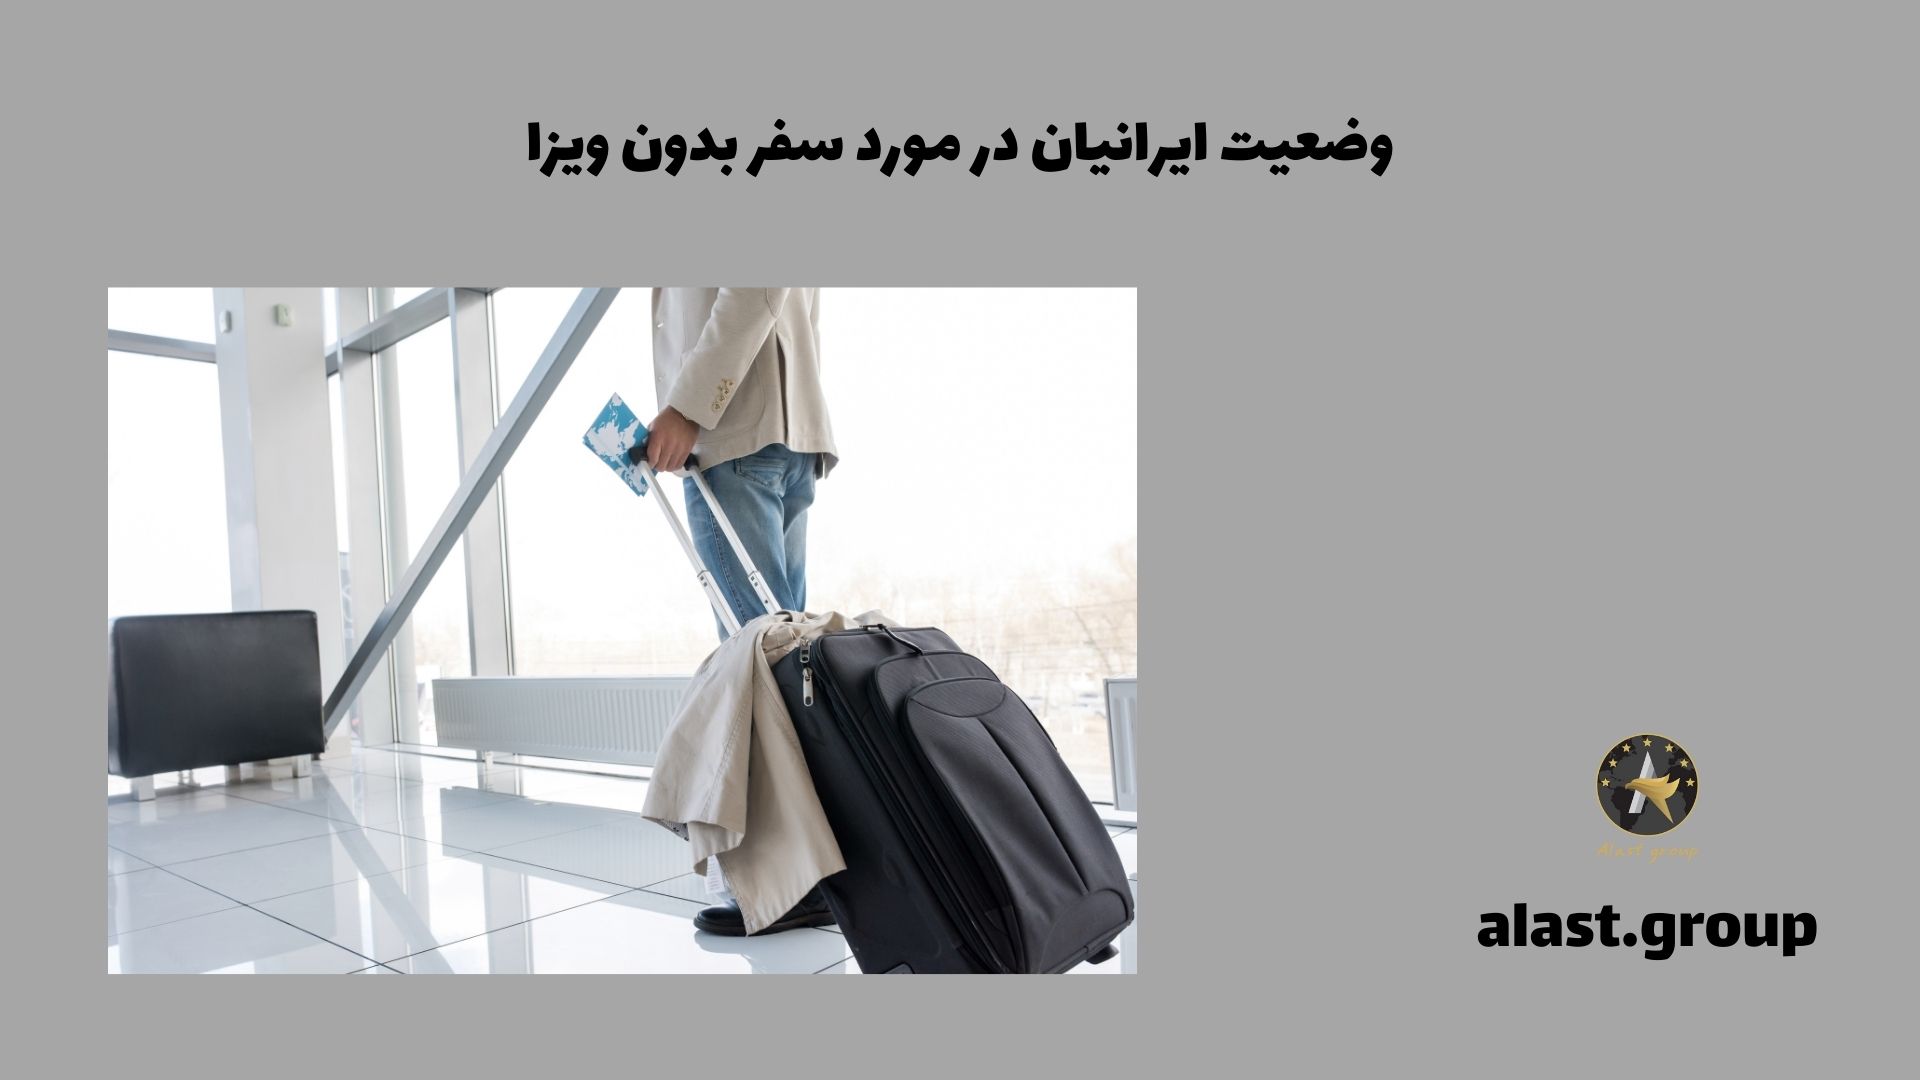 وضعیت ایرانیان در مورد سفر بدون ویزا